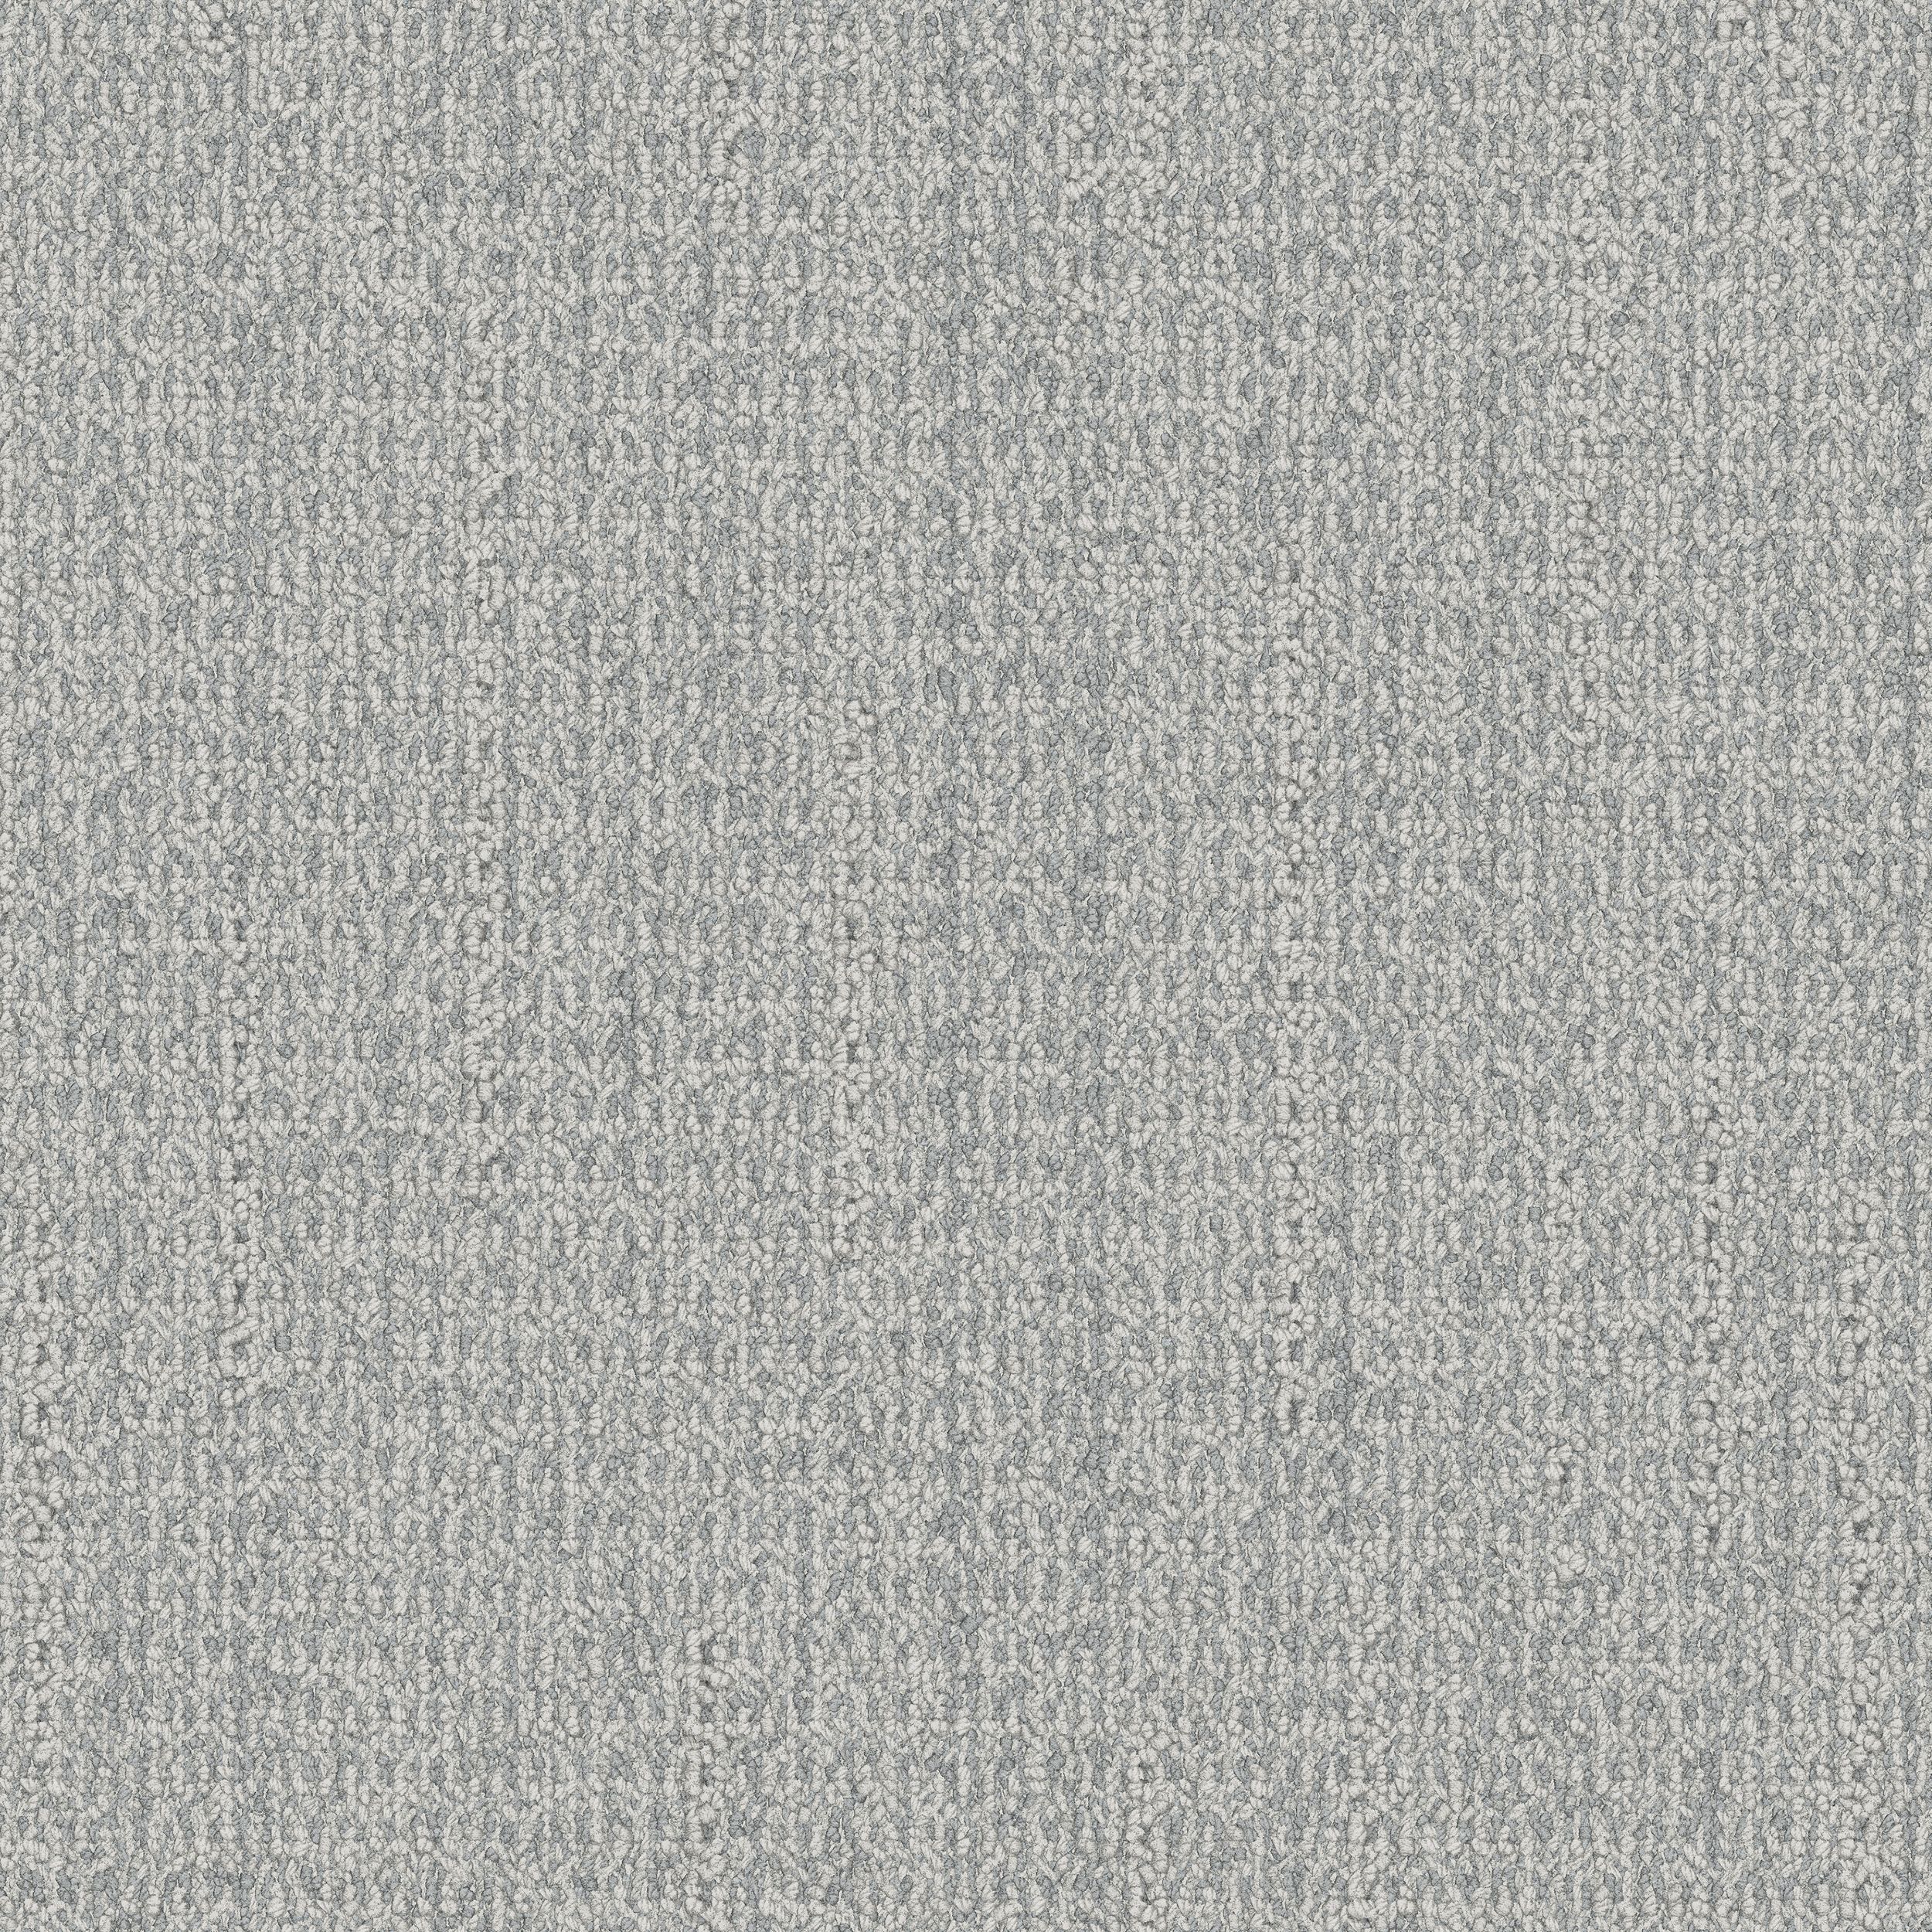 WG100 Carpet Tile In Pearl afbeeldingnummer 1